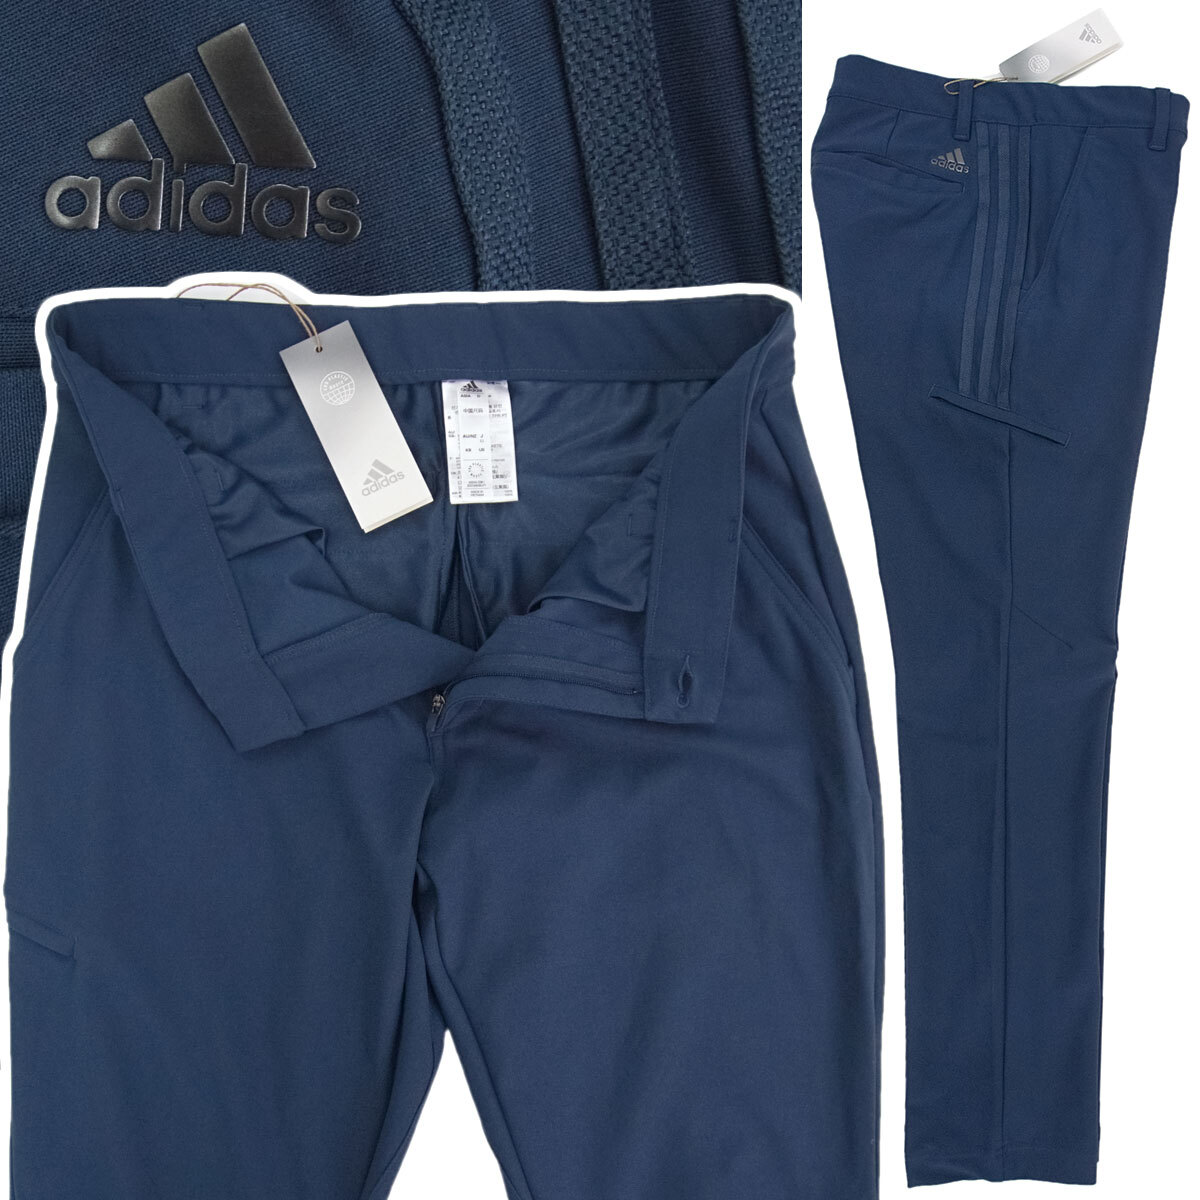 [ новый товар ] Adidas Golf [82] весна лето 4WAY стрейч Golf брюки слаксы талия .. краб эластичный cargo карман есть стирка возможность темно-синий adidas